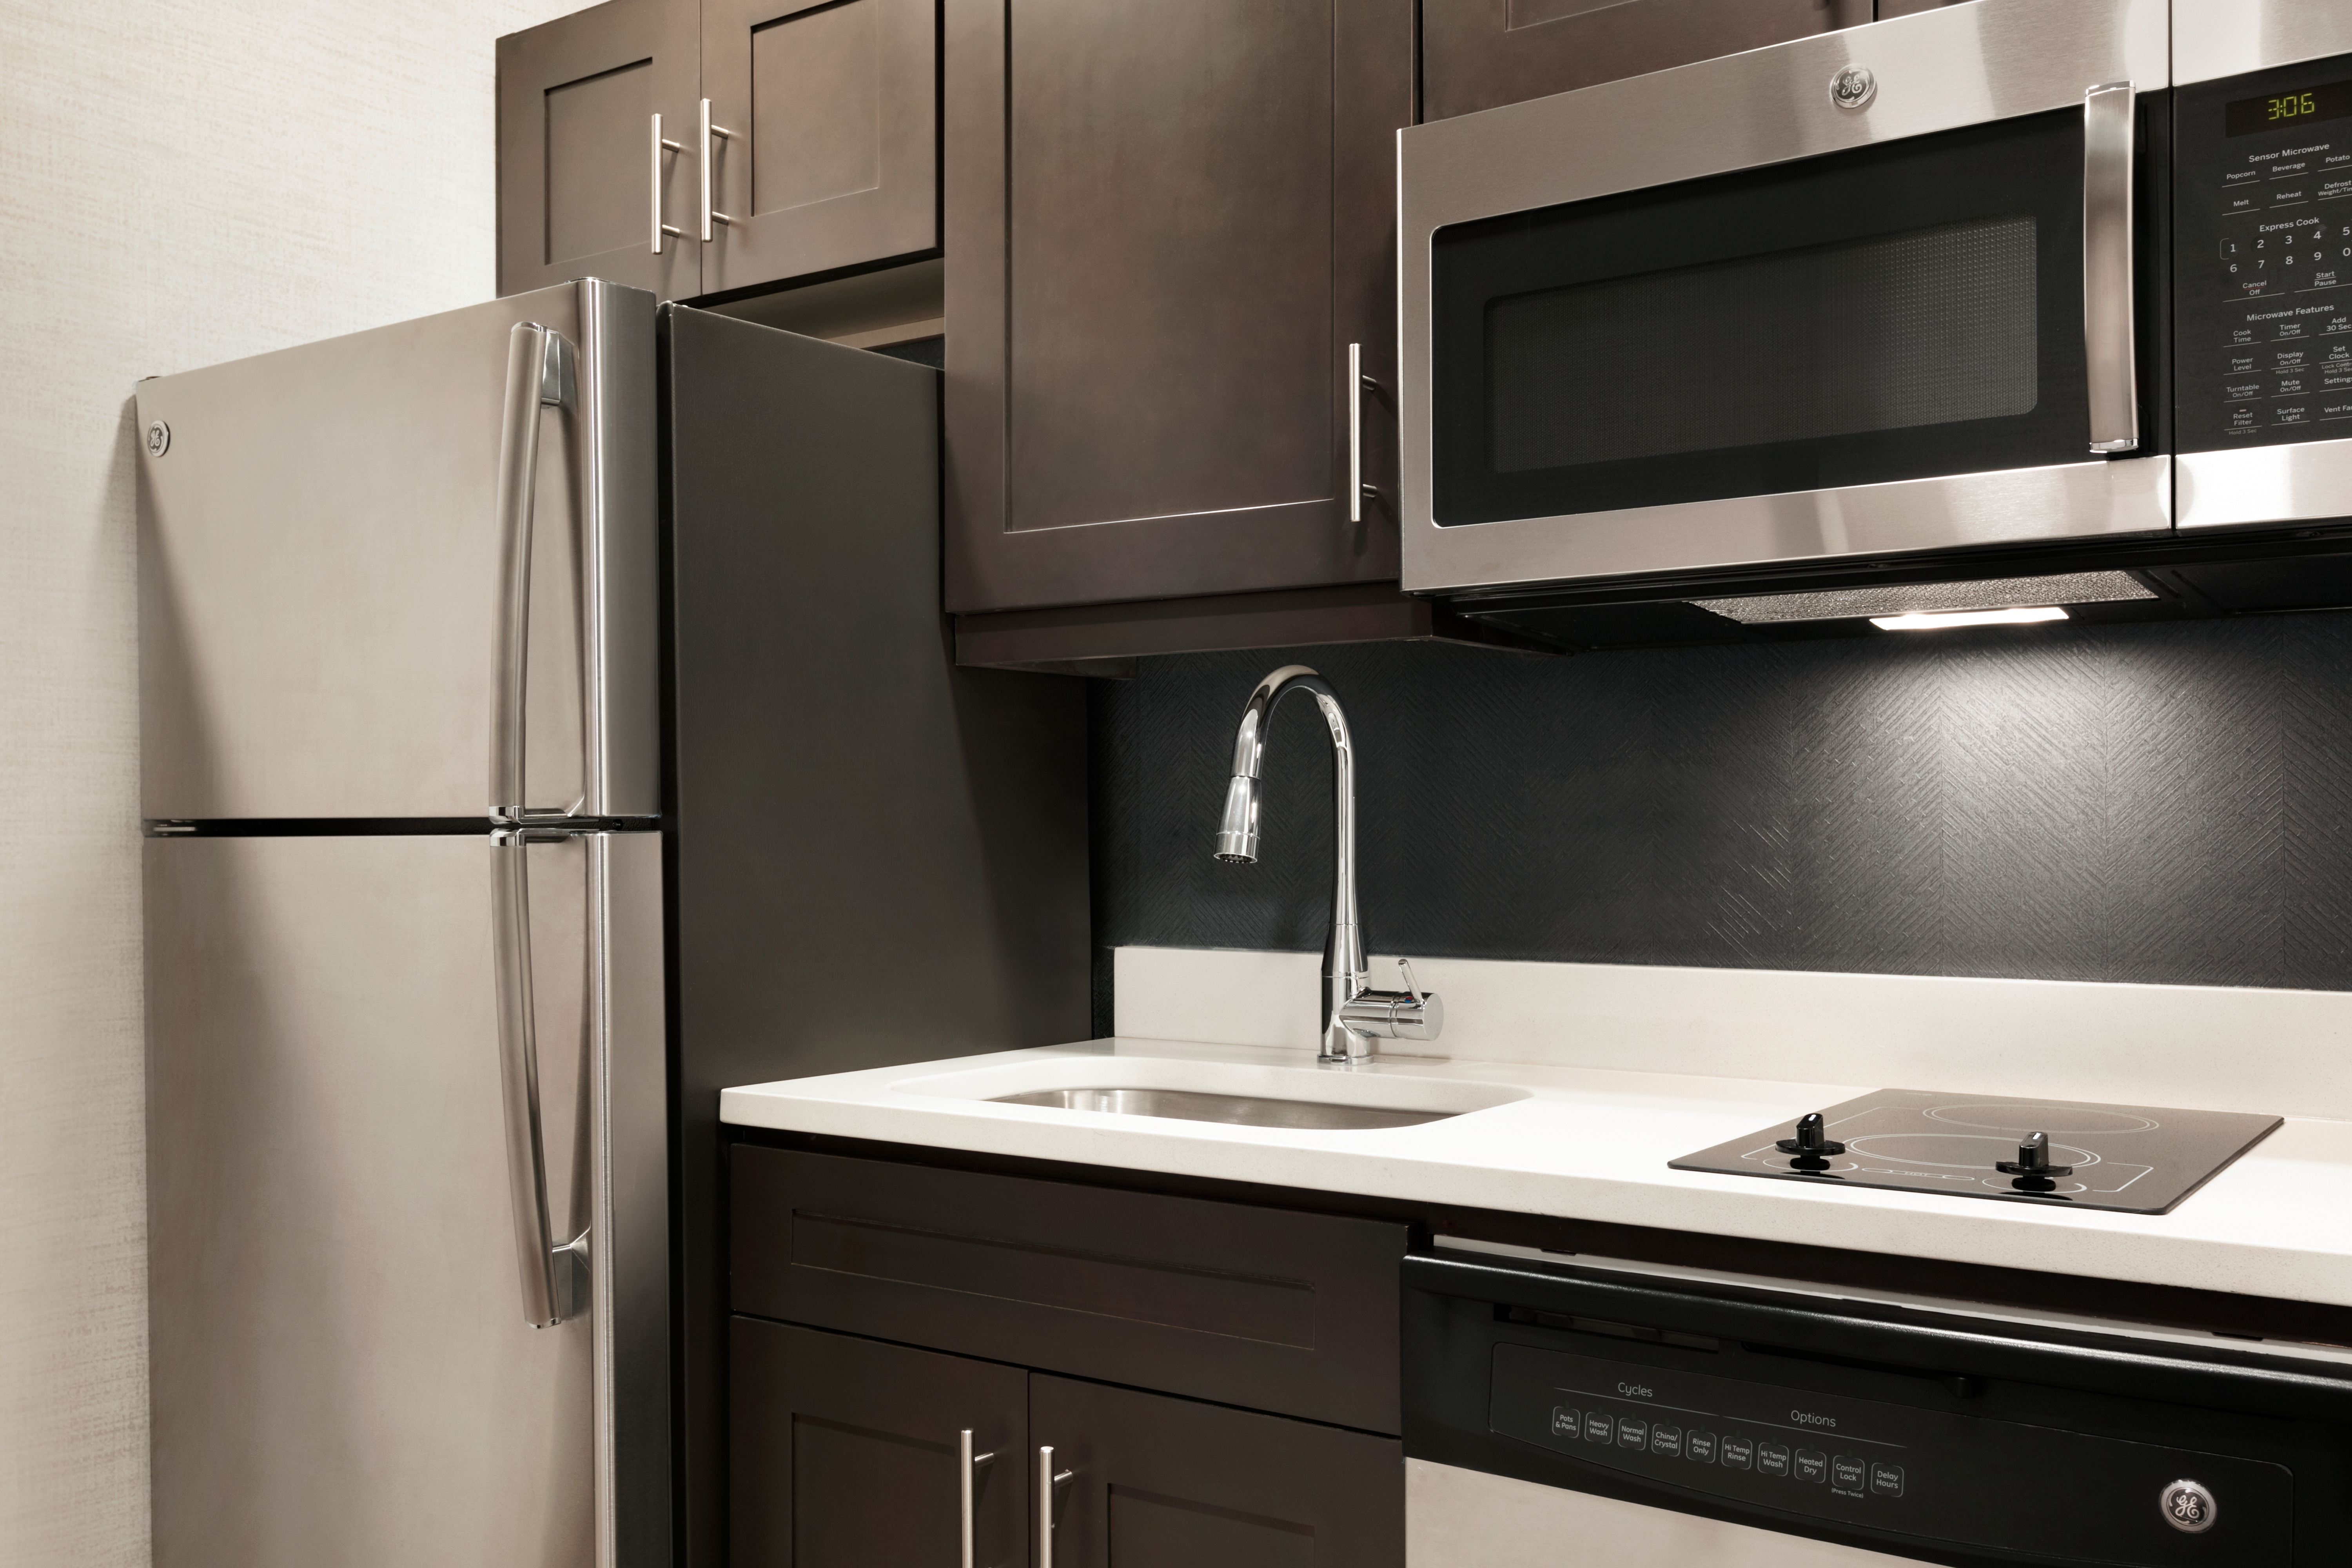 Guest Kitchen Sink, Refridgerator, Microwave and Dishwasher